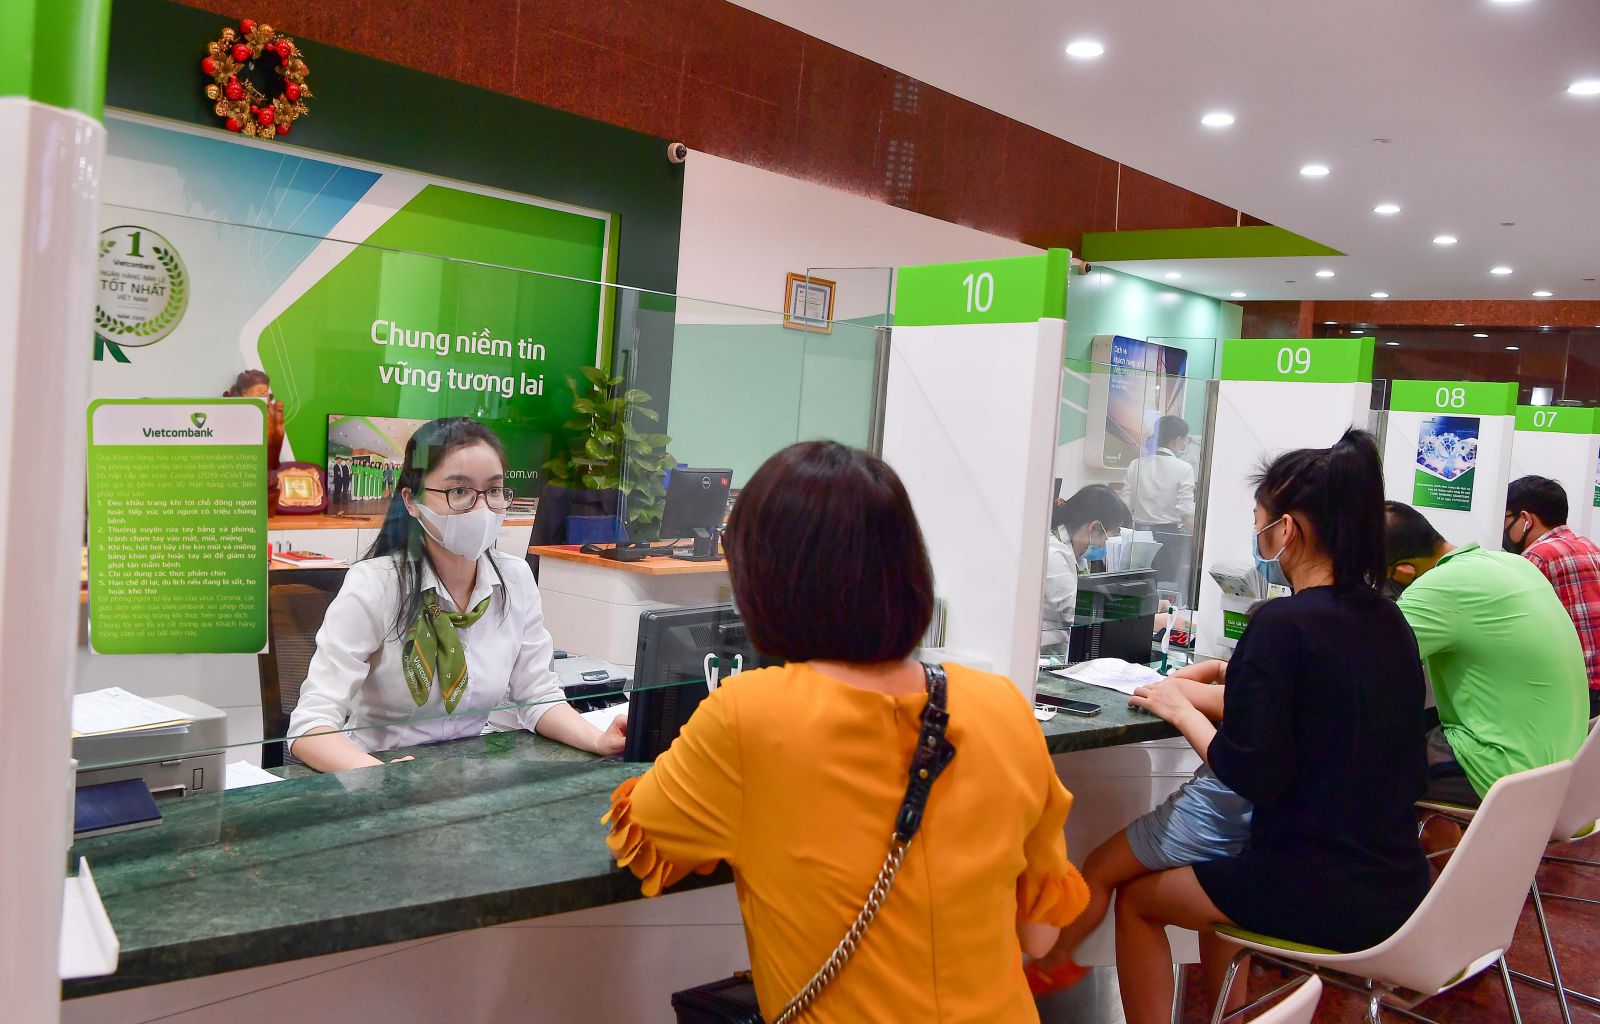 Từ 1/6 đến 31/8, Vietcombank giảm lãi suất tiền vay tới 1,0%/năm đối với VND và giảm phí lên đến 50% hỗ trợ cho khách hàng ảnh hưởng dịch COVID-19 tại Bắc Giang và Bắc Ninh. 